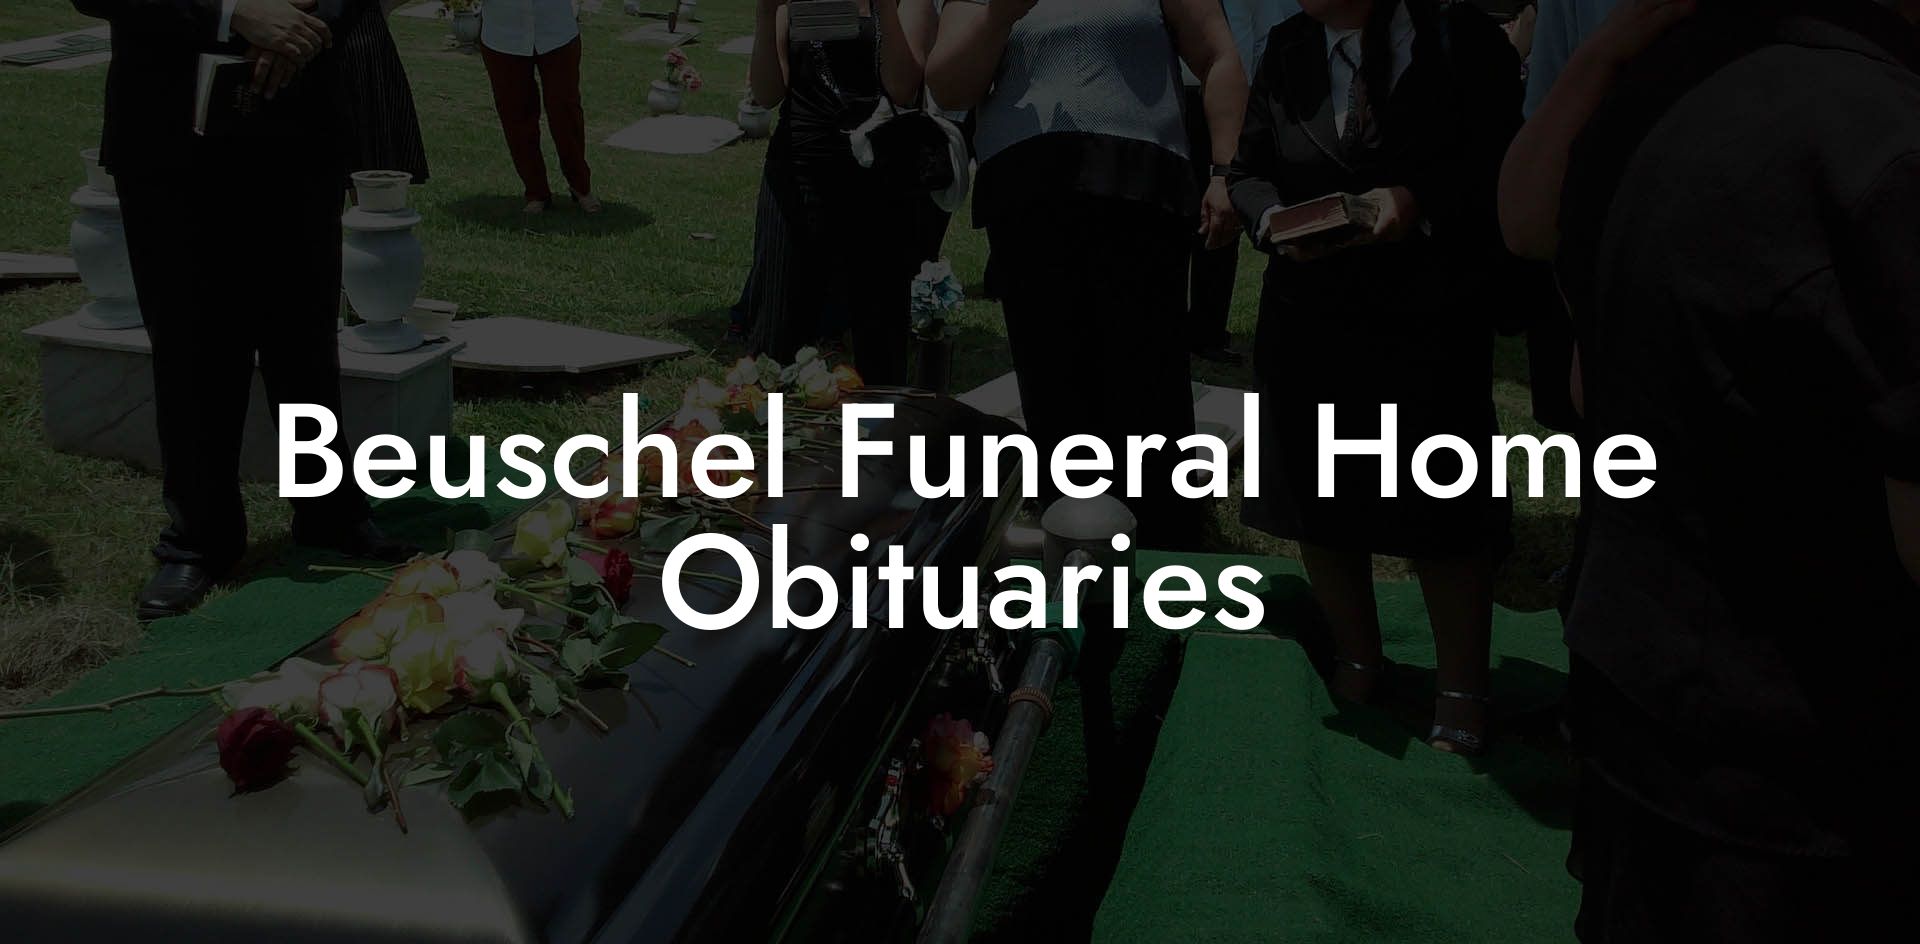 Beuschel Funeral Home Obituaries